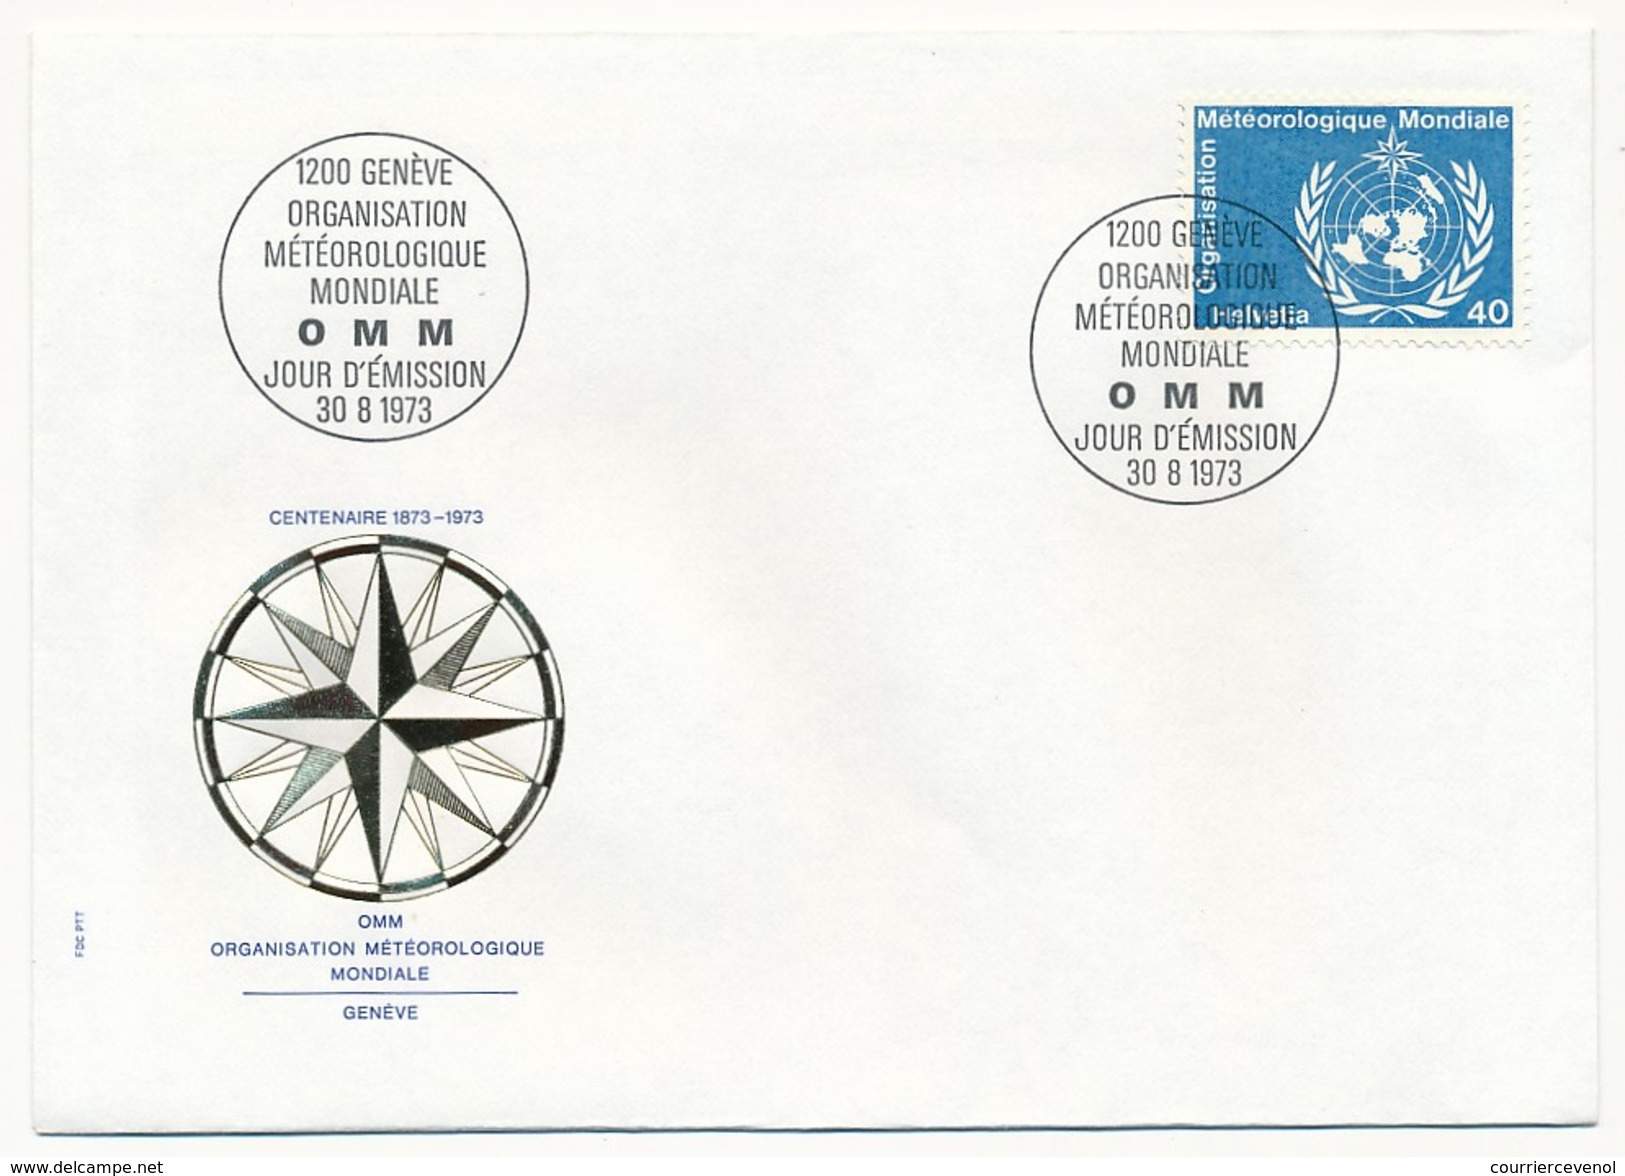 SUISSE - 8 Enveloppes FDC - Organisation Météorologique Mondiale 1973 (Timbres De Service) - Environment & Climate Protection